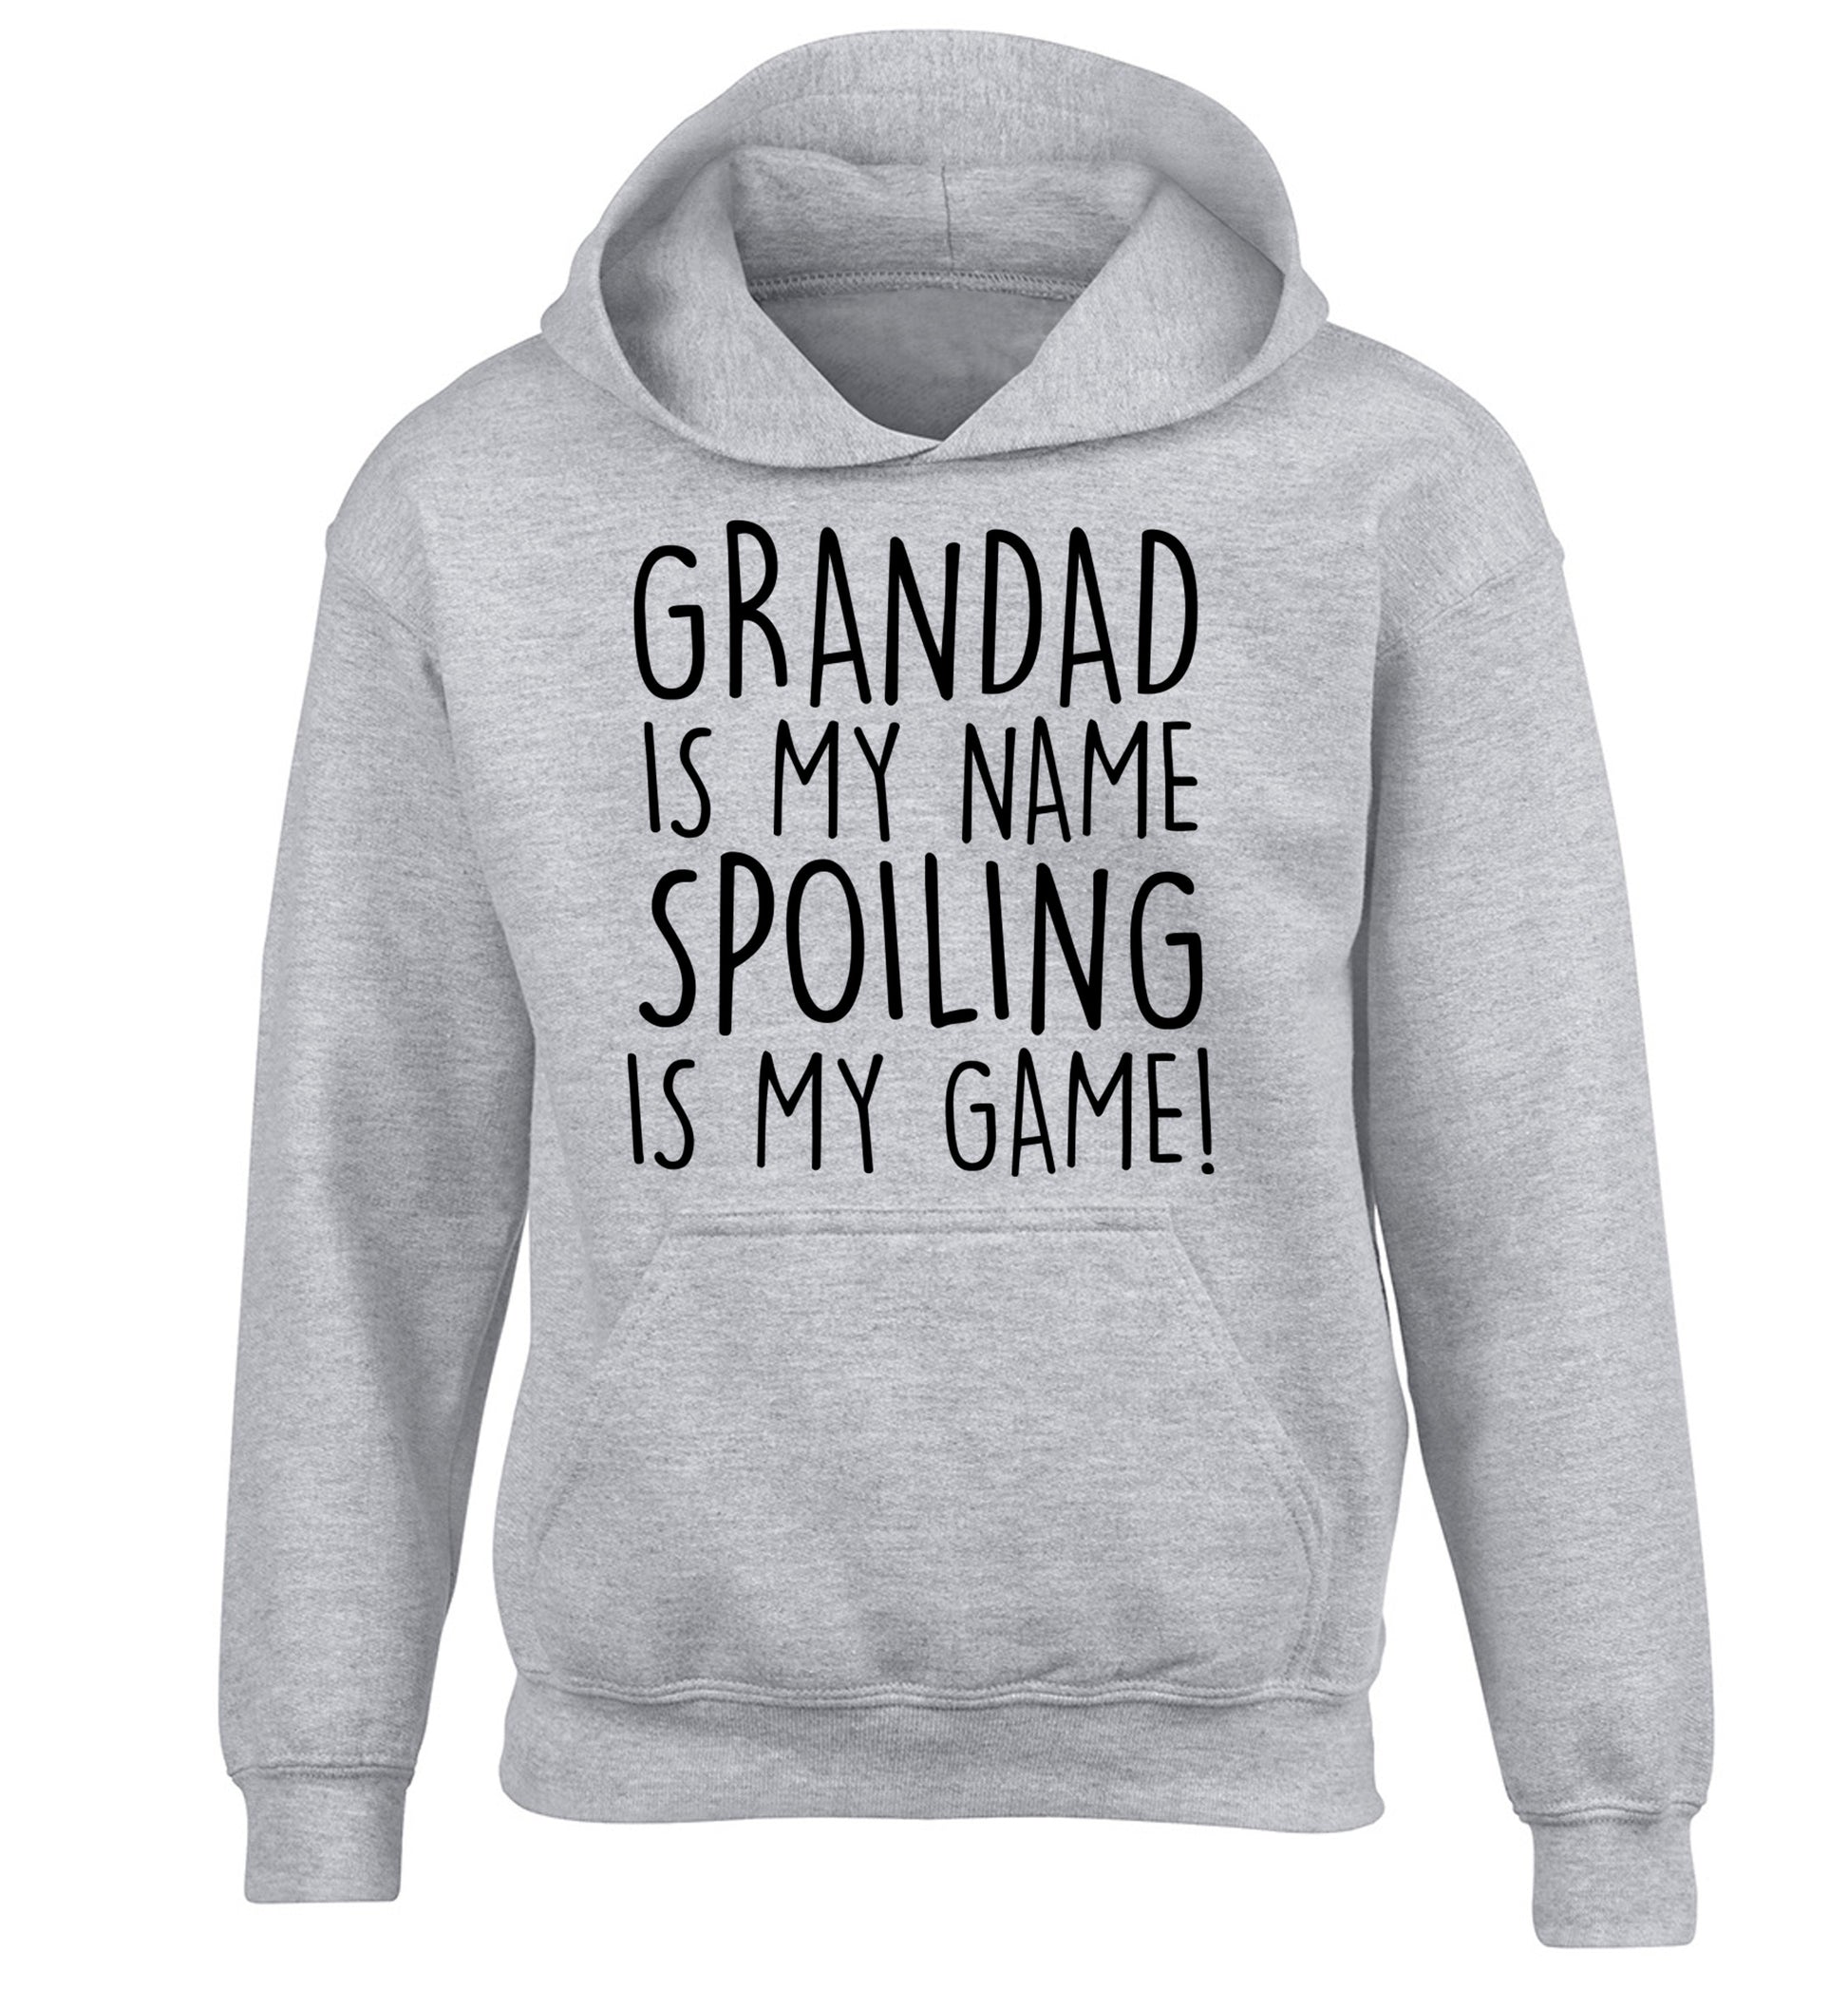 Grandad is my name, spoiling is my game children's grey hoodie 12-14 Years